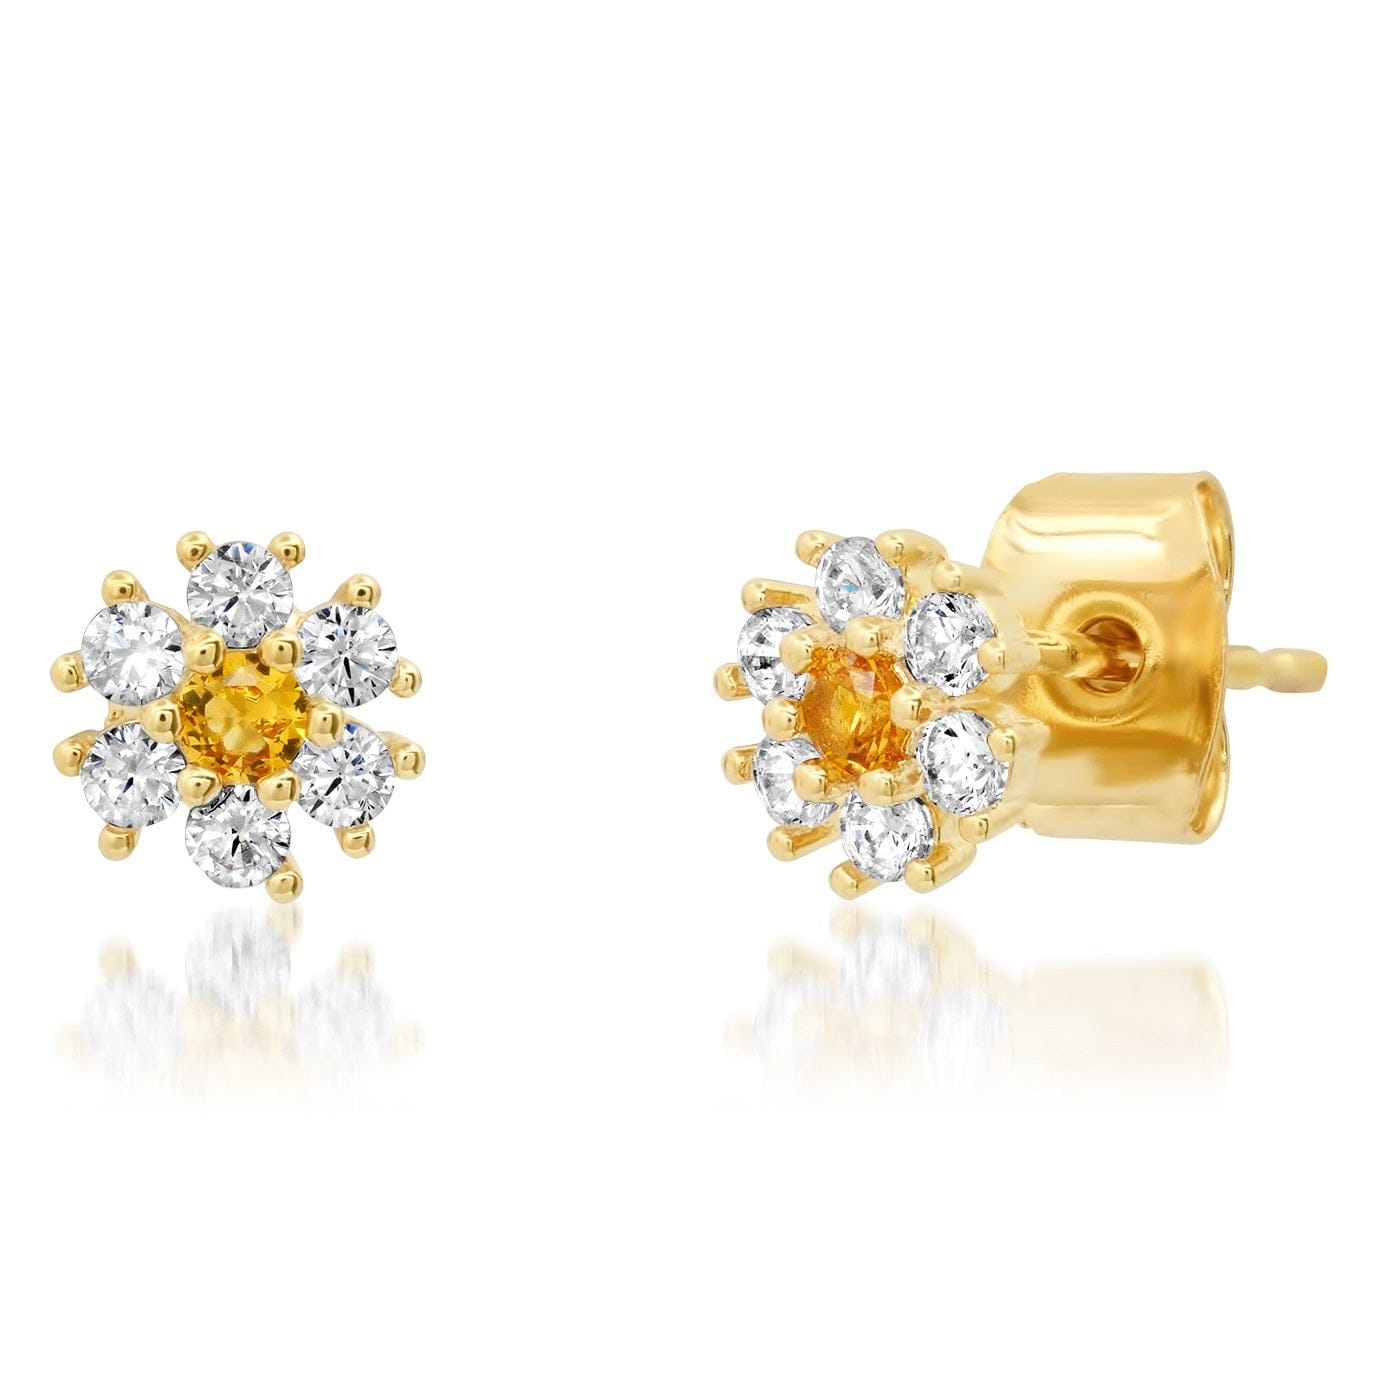 TAI JEWELRY Earrings Yellow CZ Flower Stud With Jewel Tone Center Stone